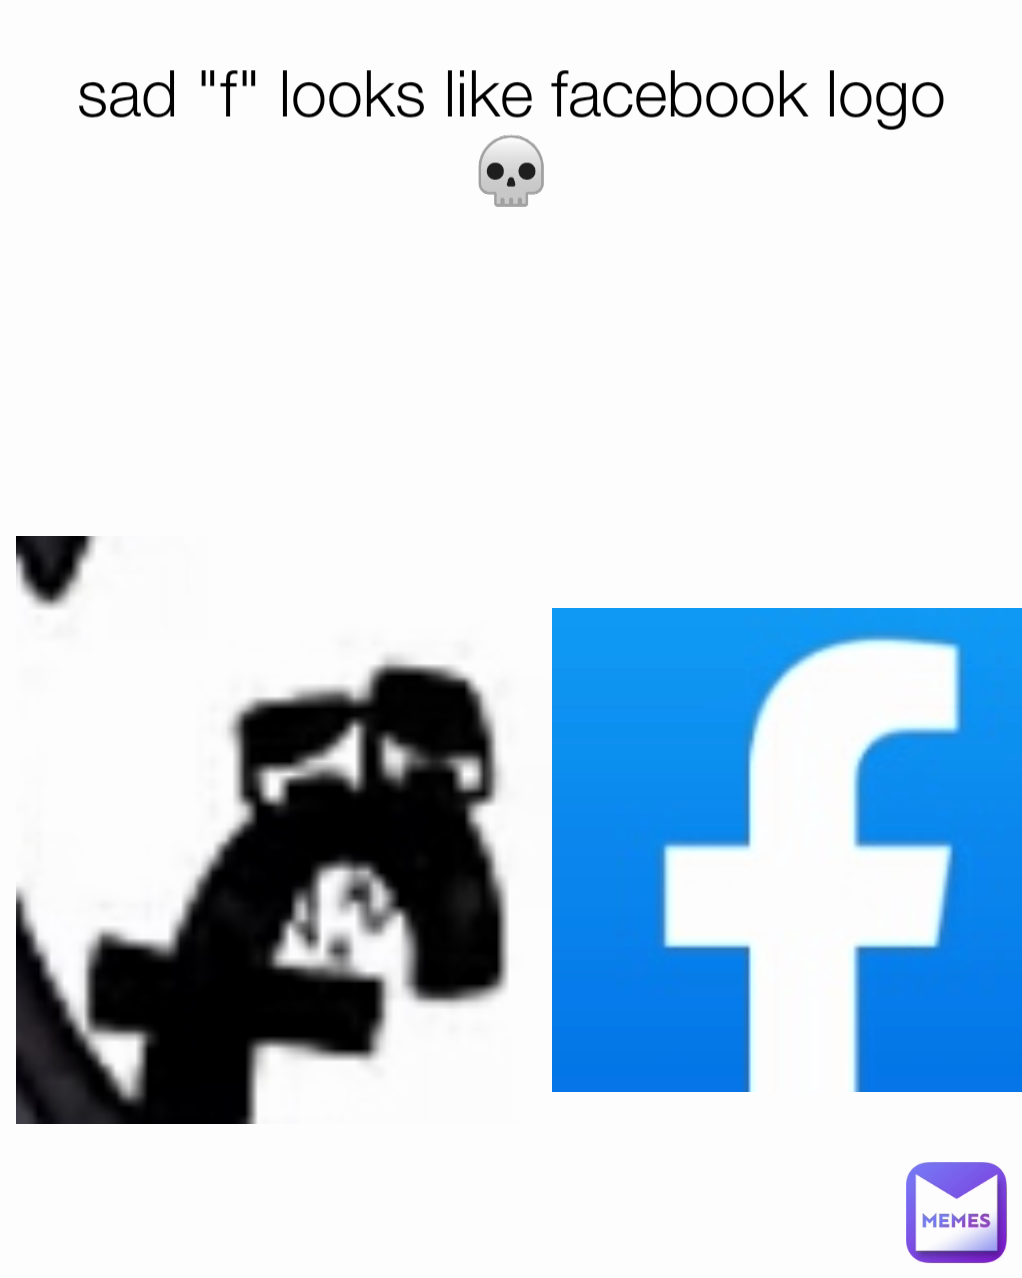 facebook funny logo